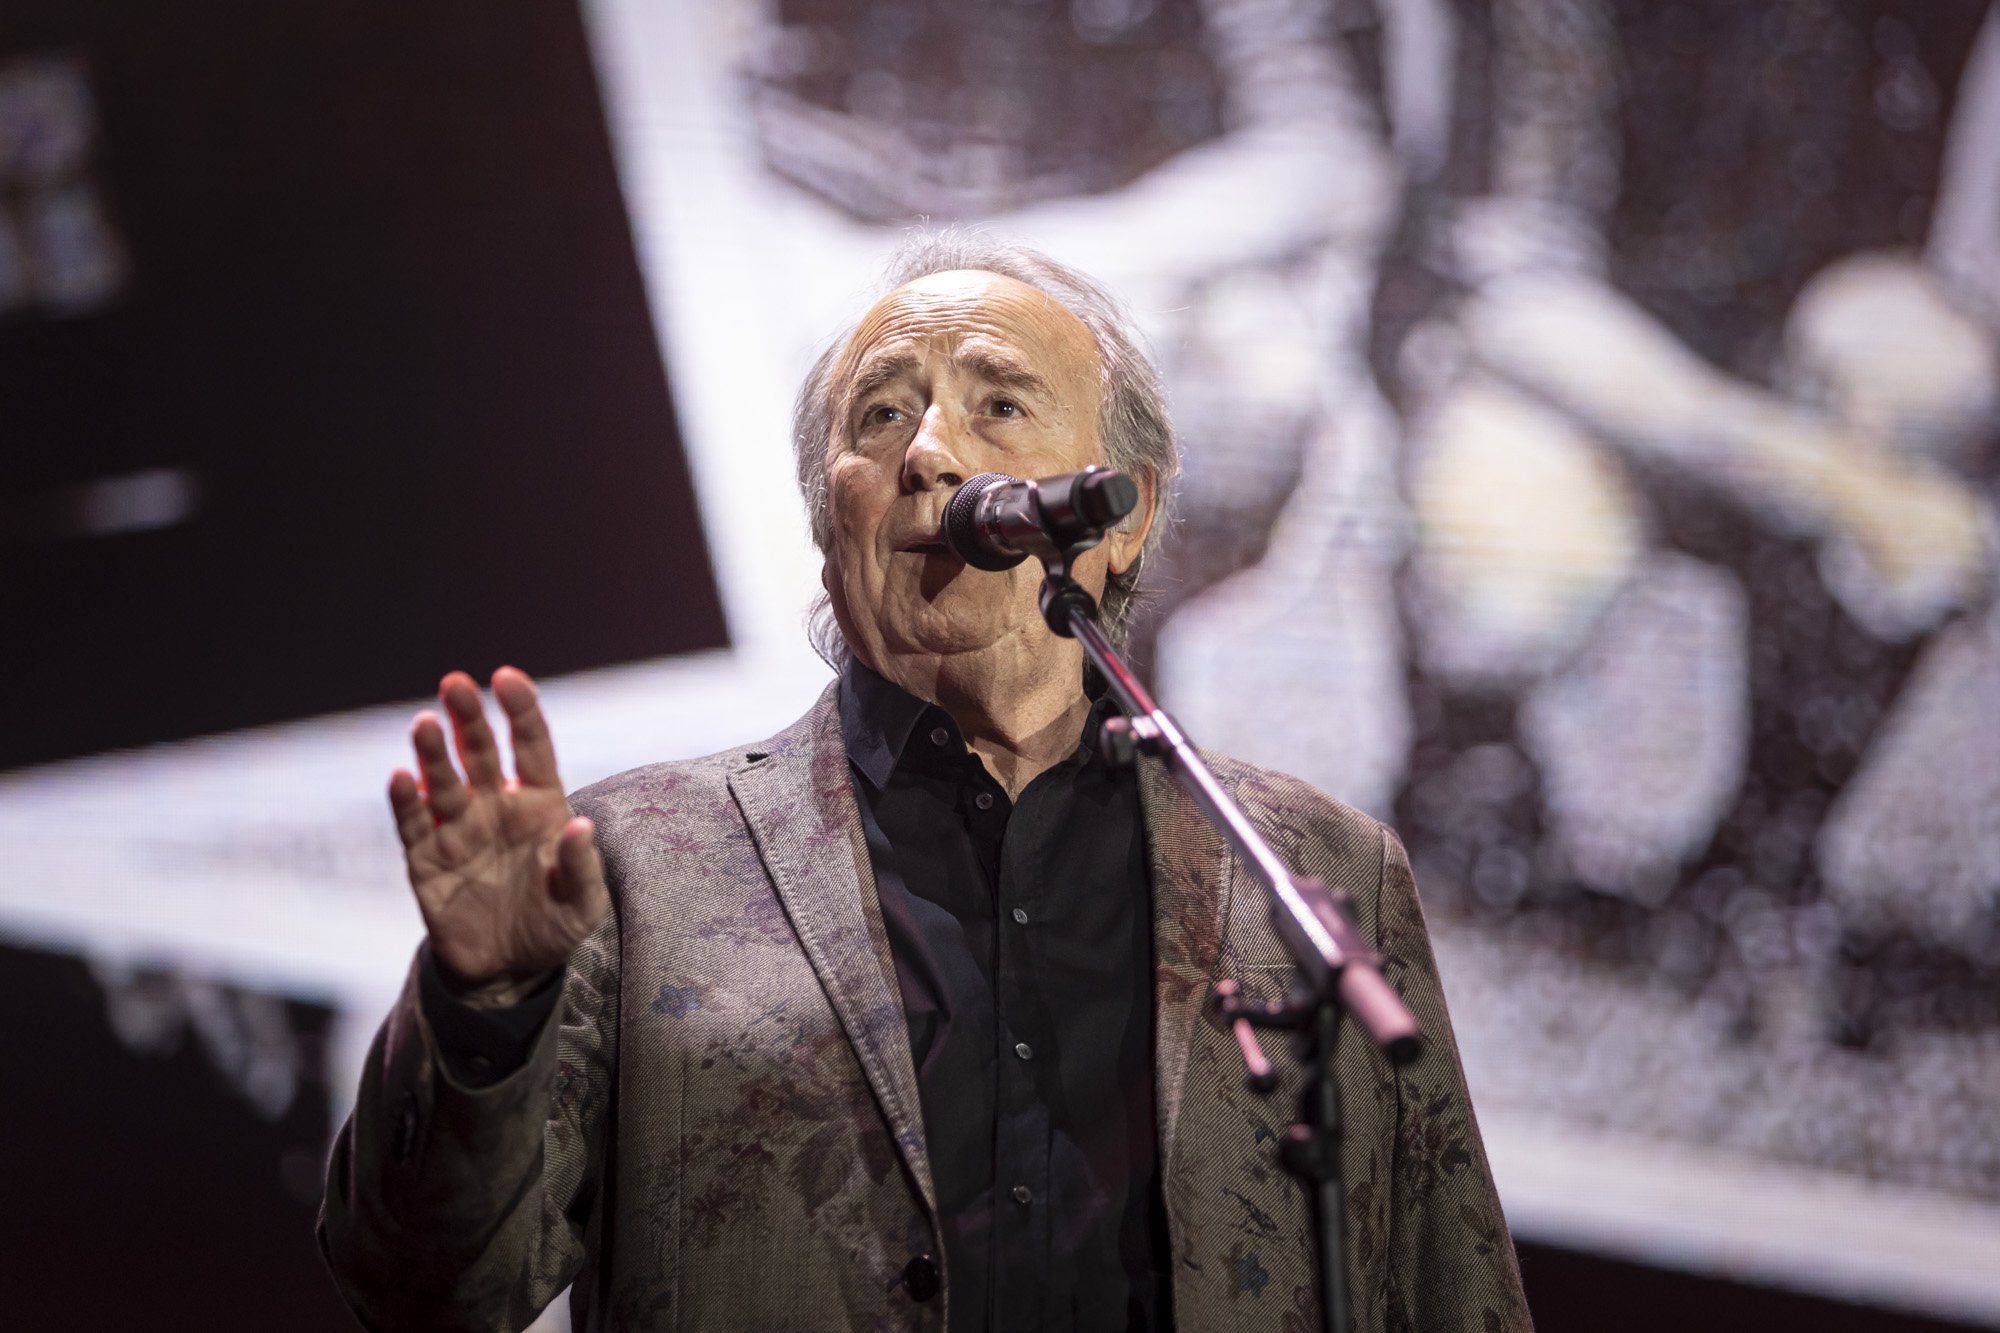 Un cantant català VIP qüestiona les virtuts de Joan Manuel Serrat i rep bufetades